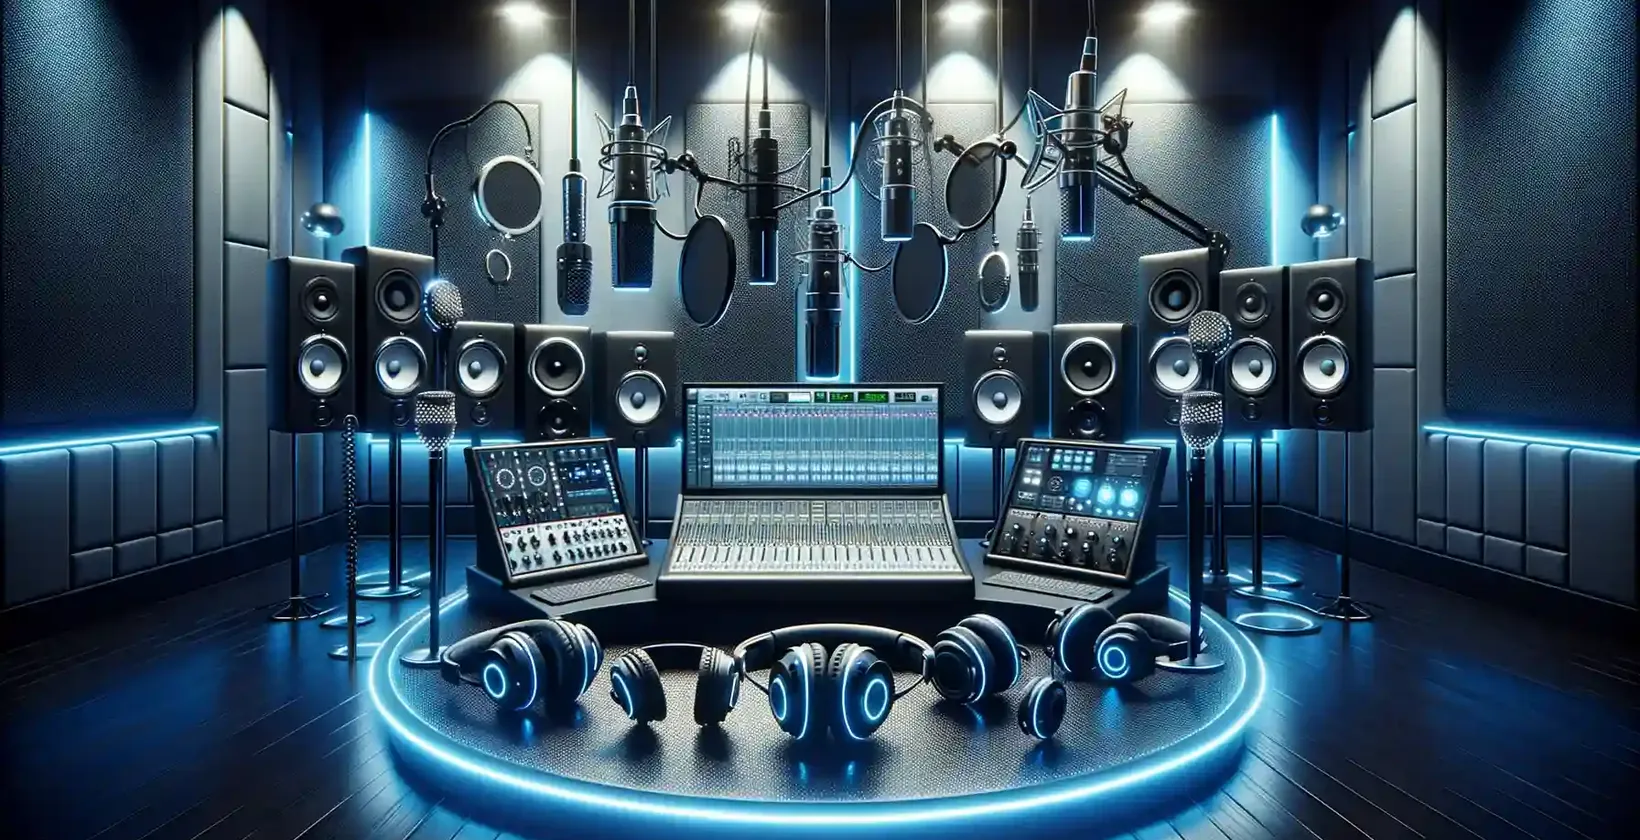 Equipamento de ditado que simboliza o melhor estúdio de gravação de 2023 com microfones, mixers